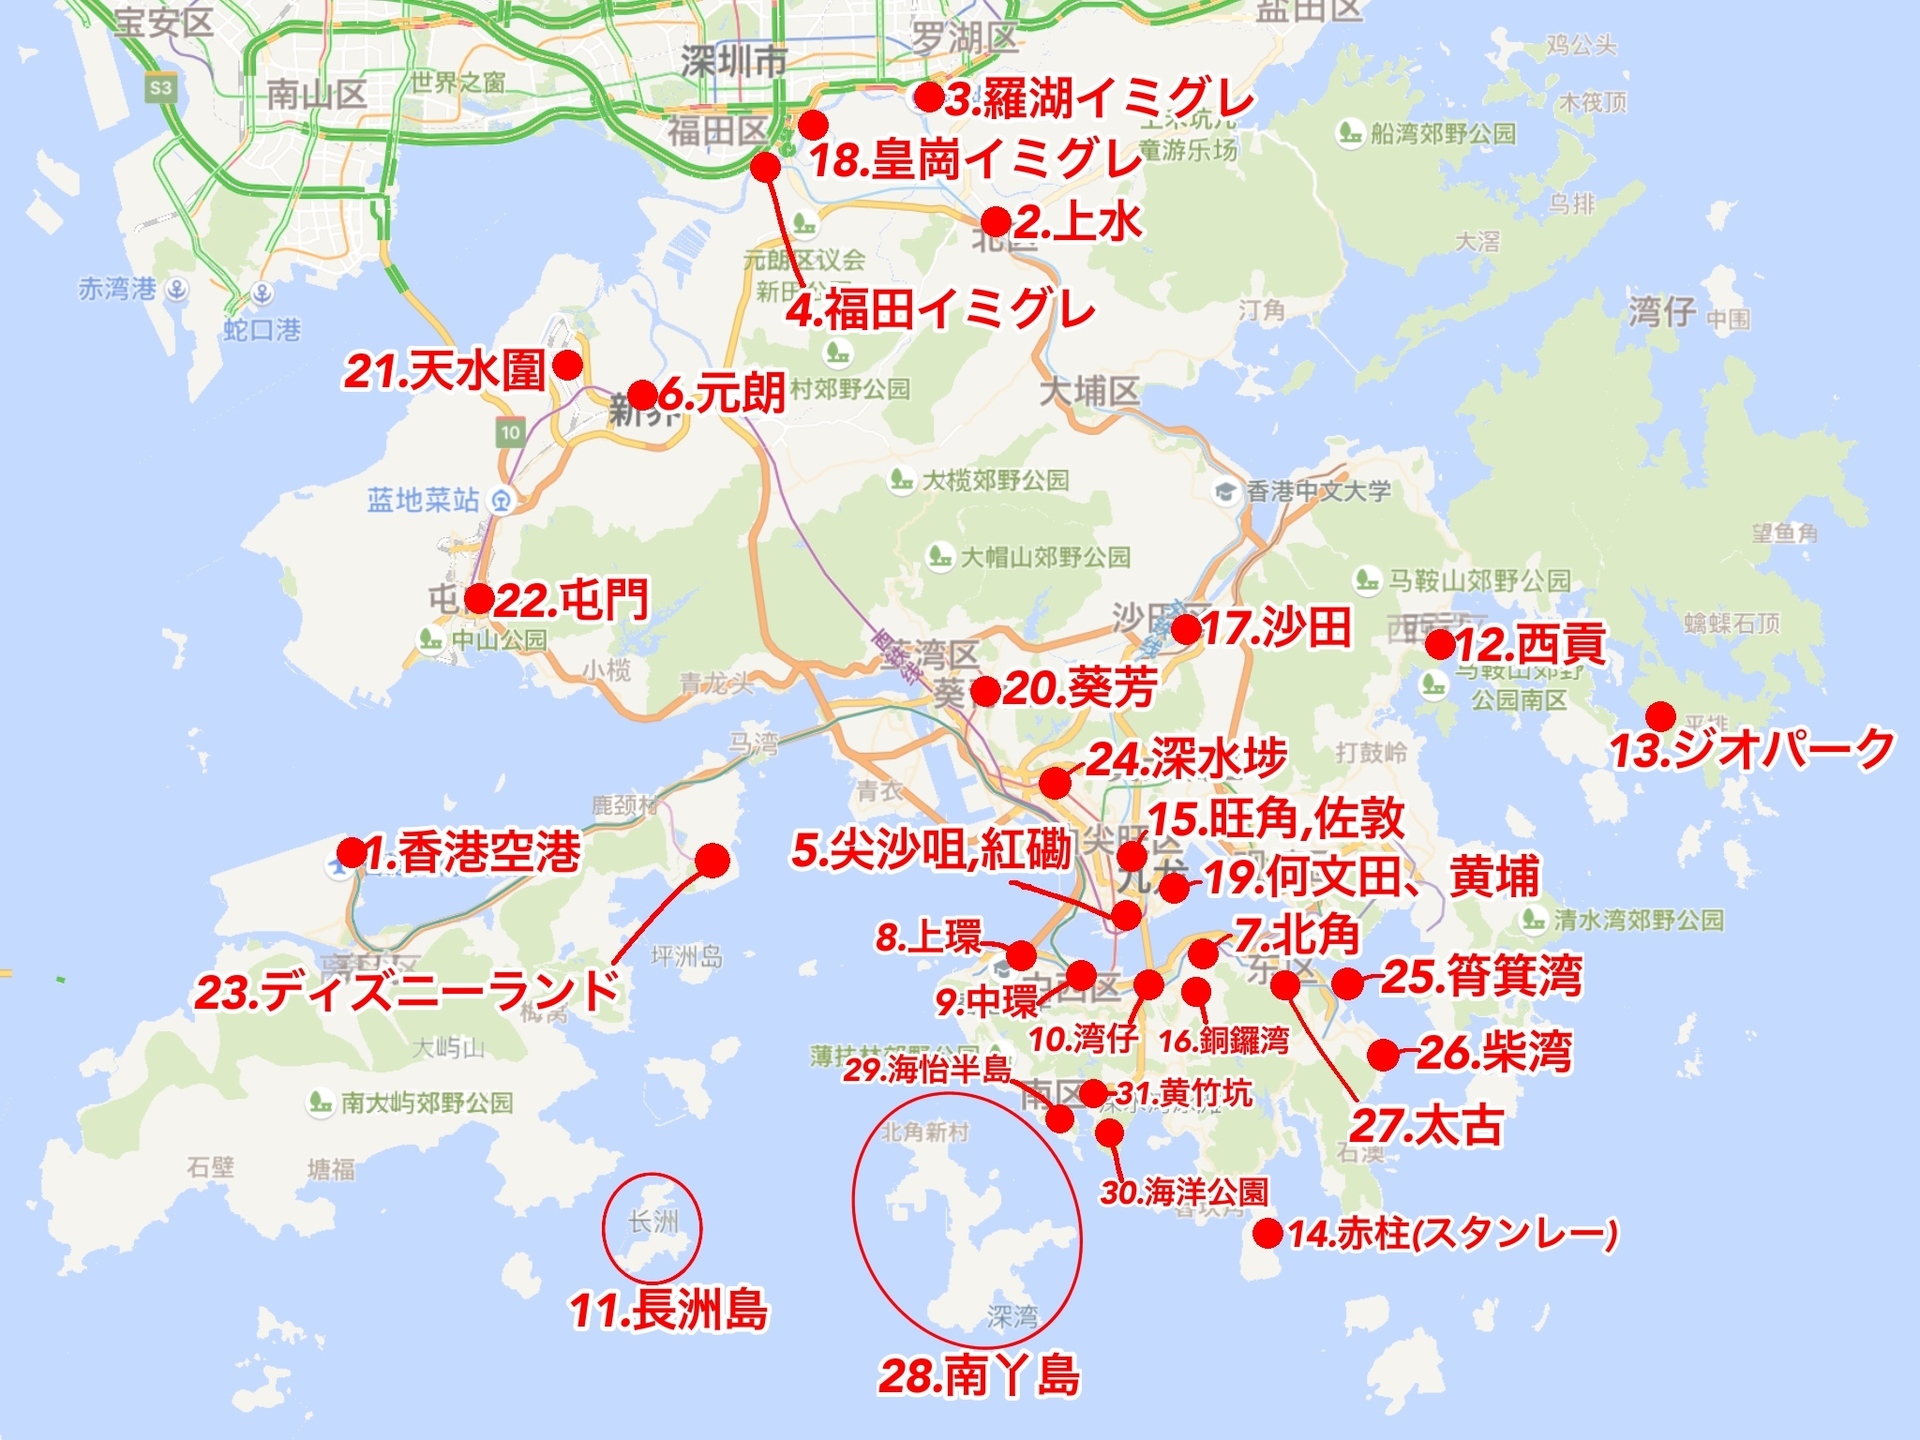 香港 記事検索エリアマップ 深セン 香港の観光旅行生活情報局